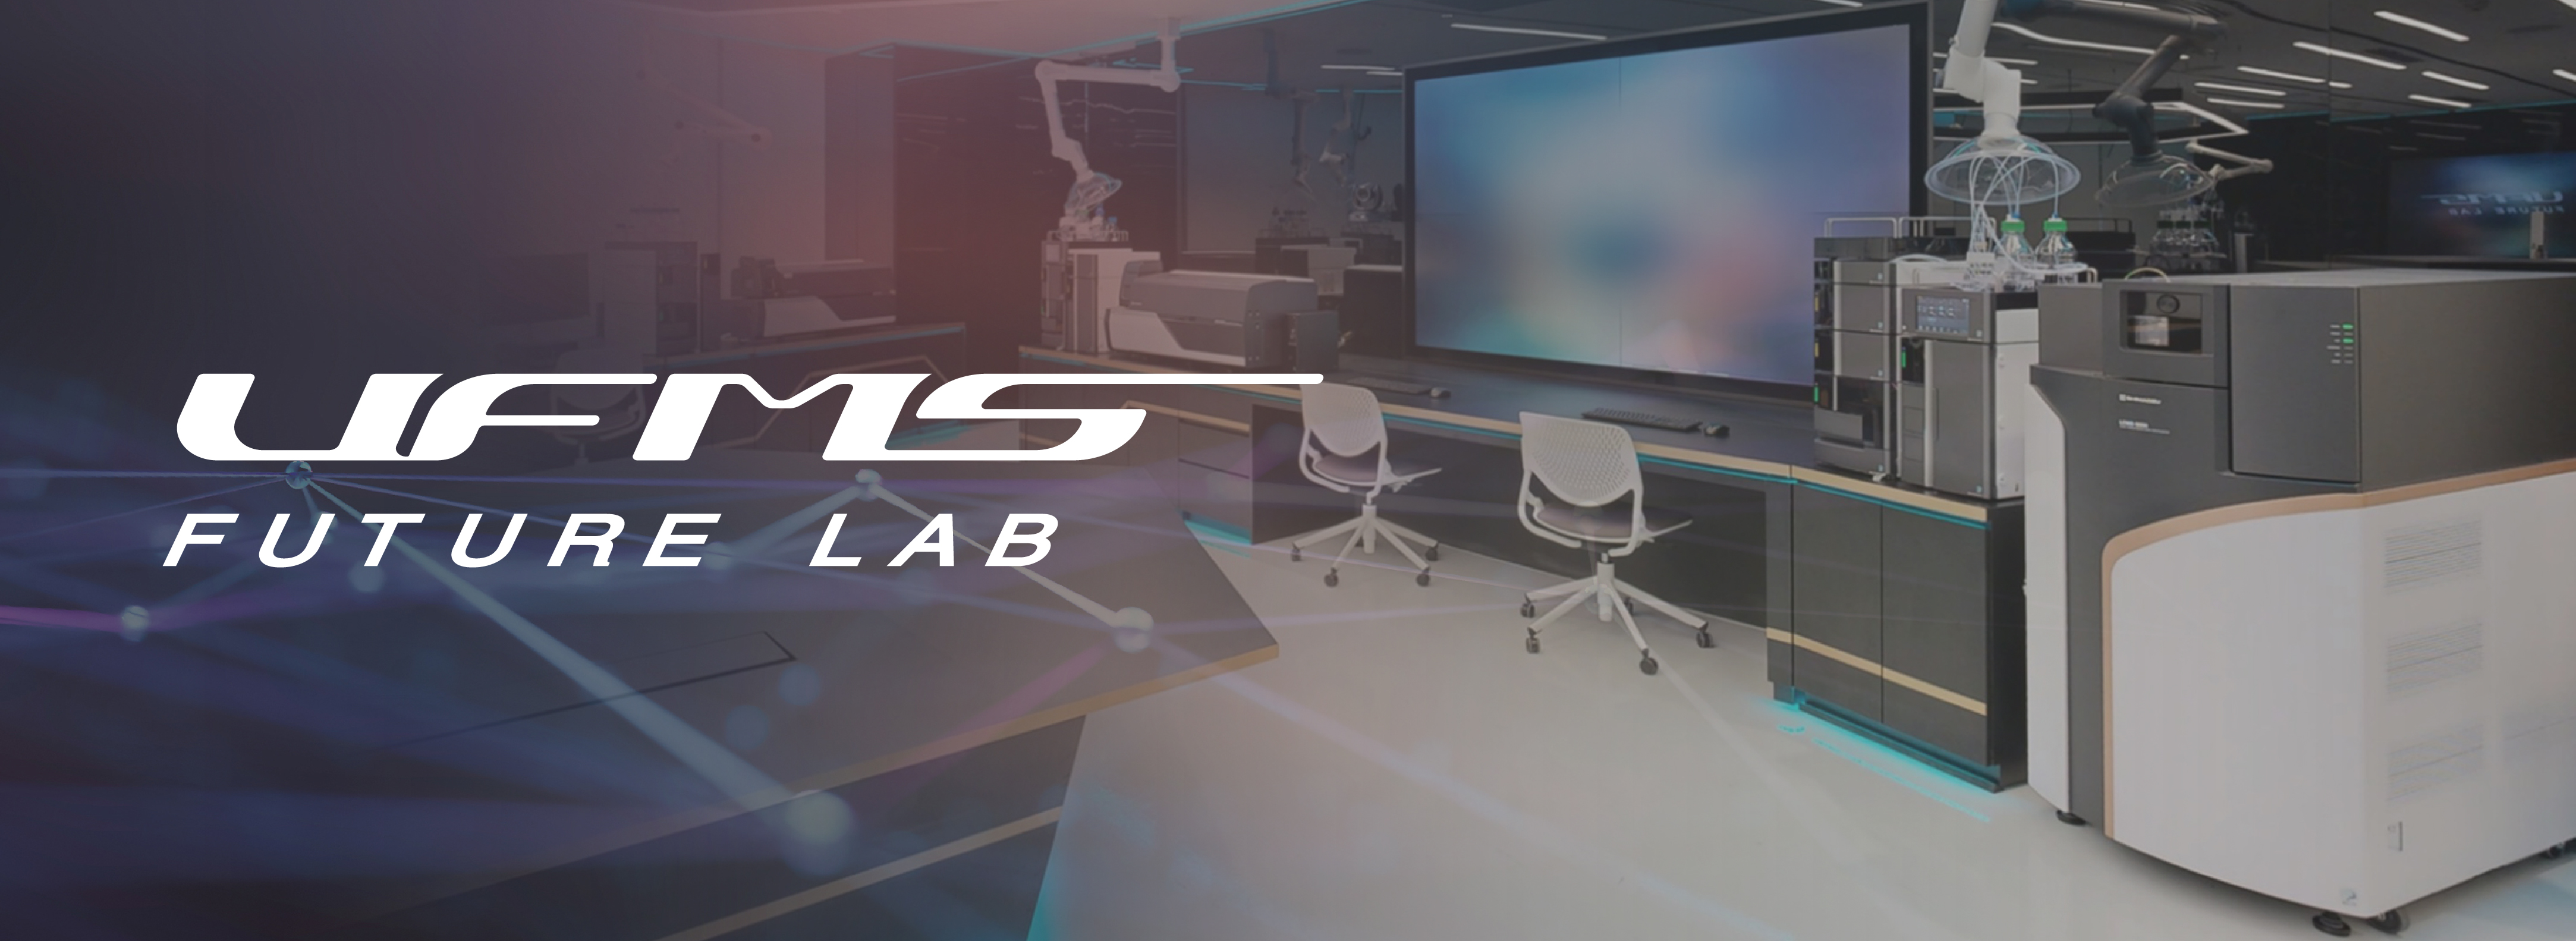 UFMS Future Lab